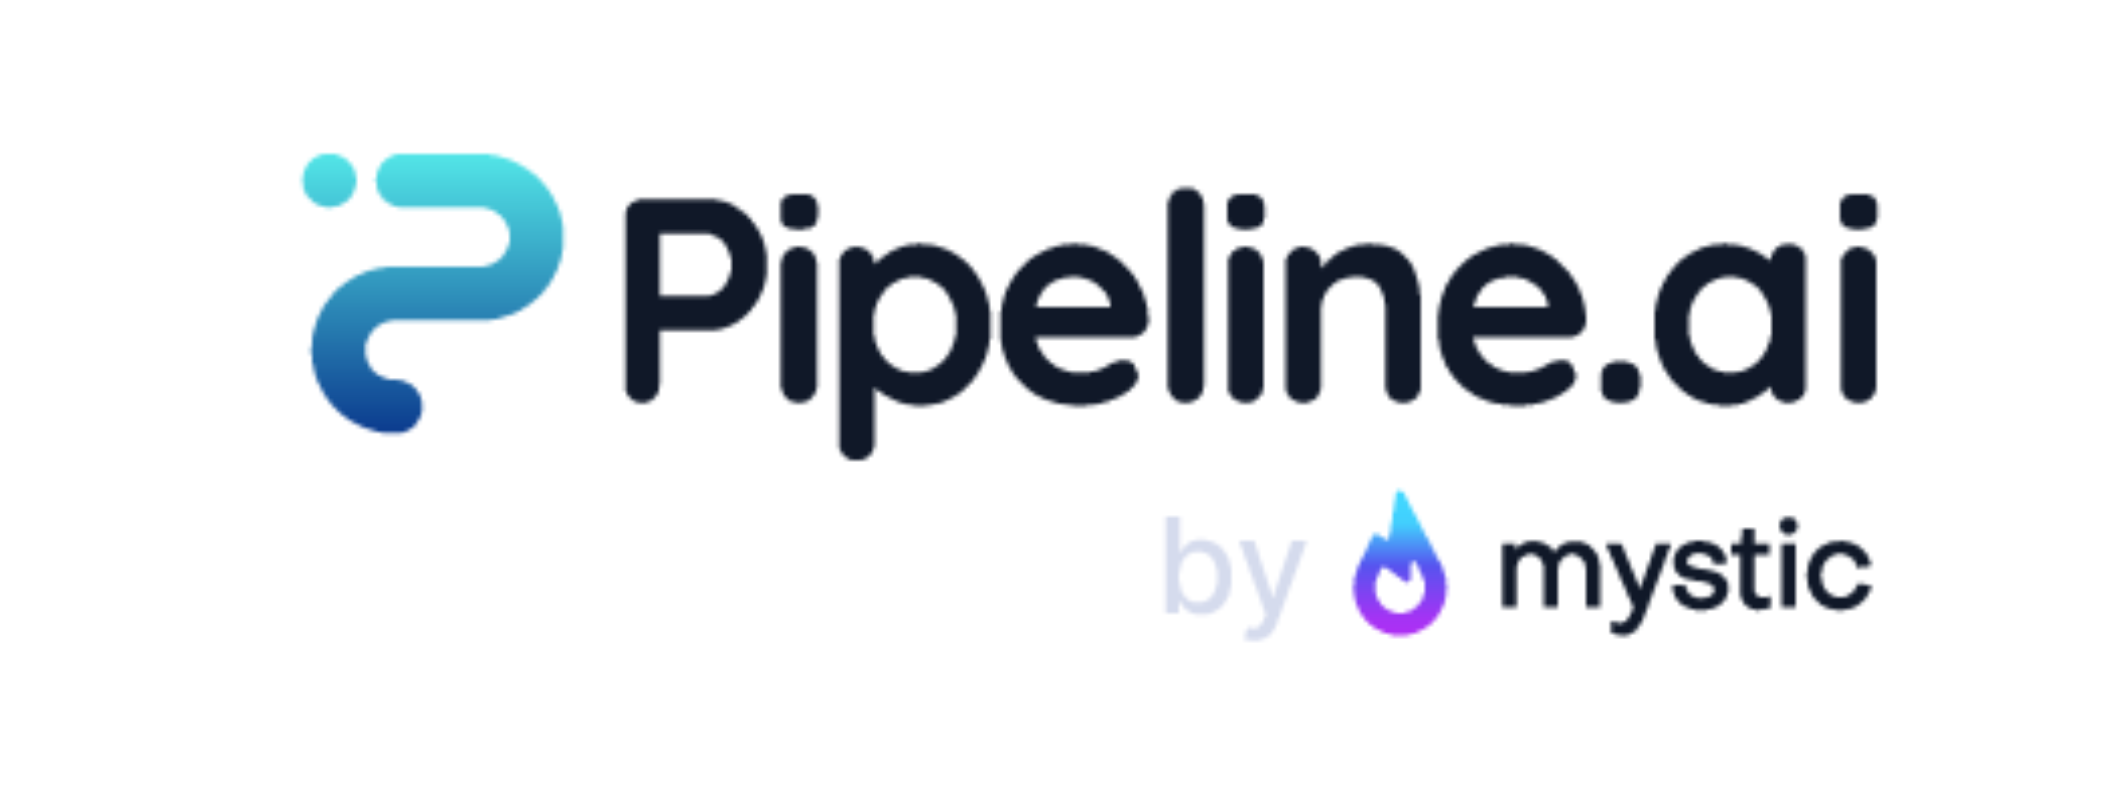 Pipeline.ai